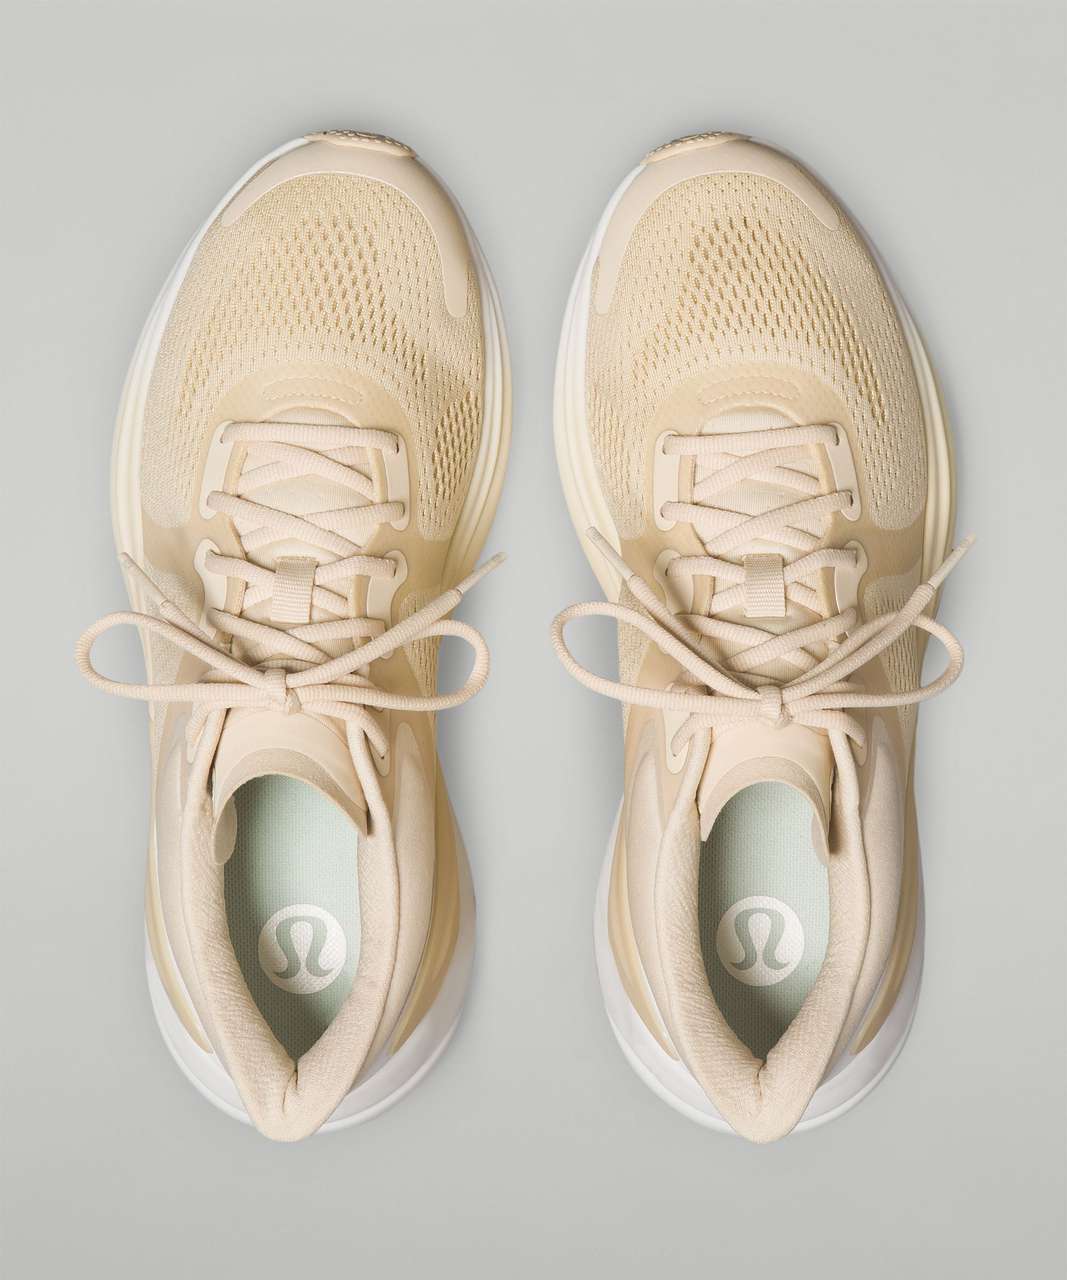 Lululemon Blissfeel Womens Running Shoe - Pale Linen / Pale Linen / White